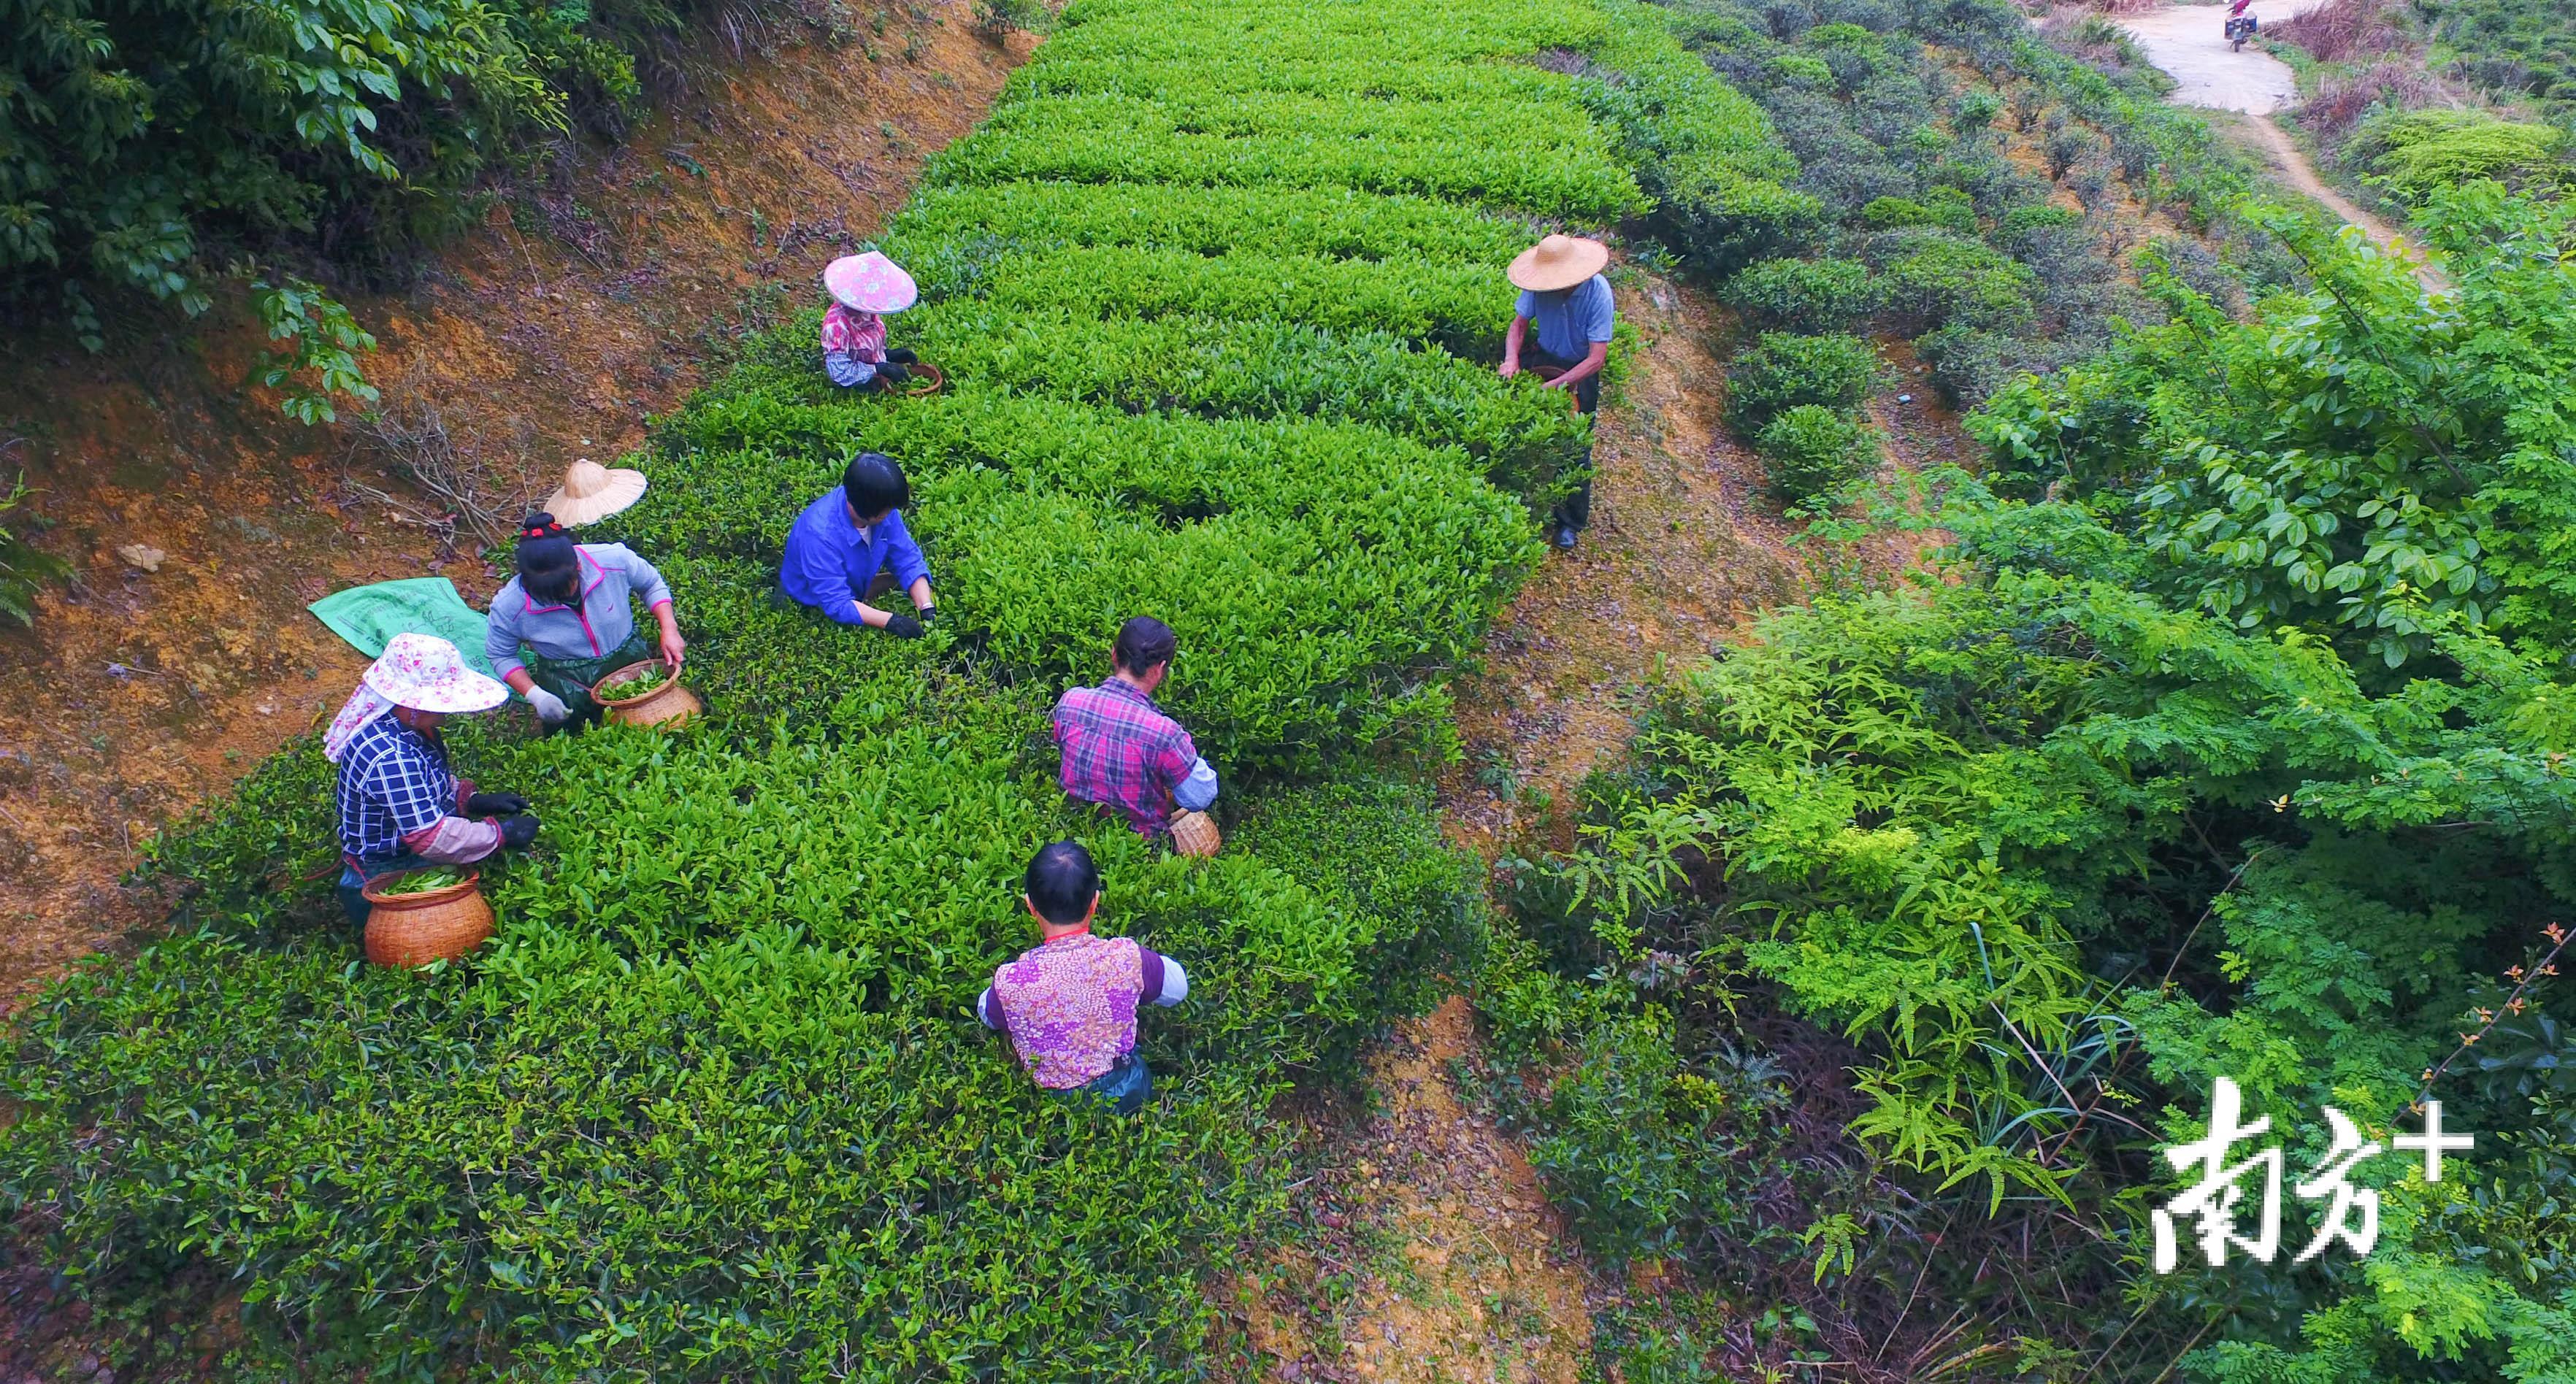 茶农们正在采摘春茶。